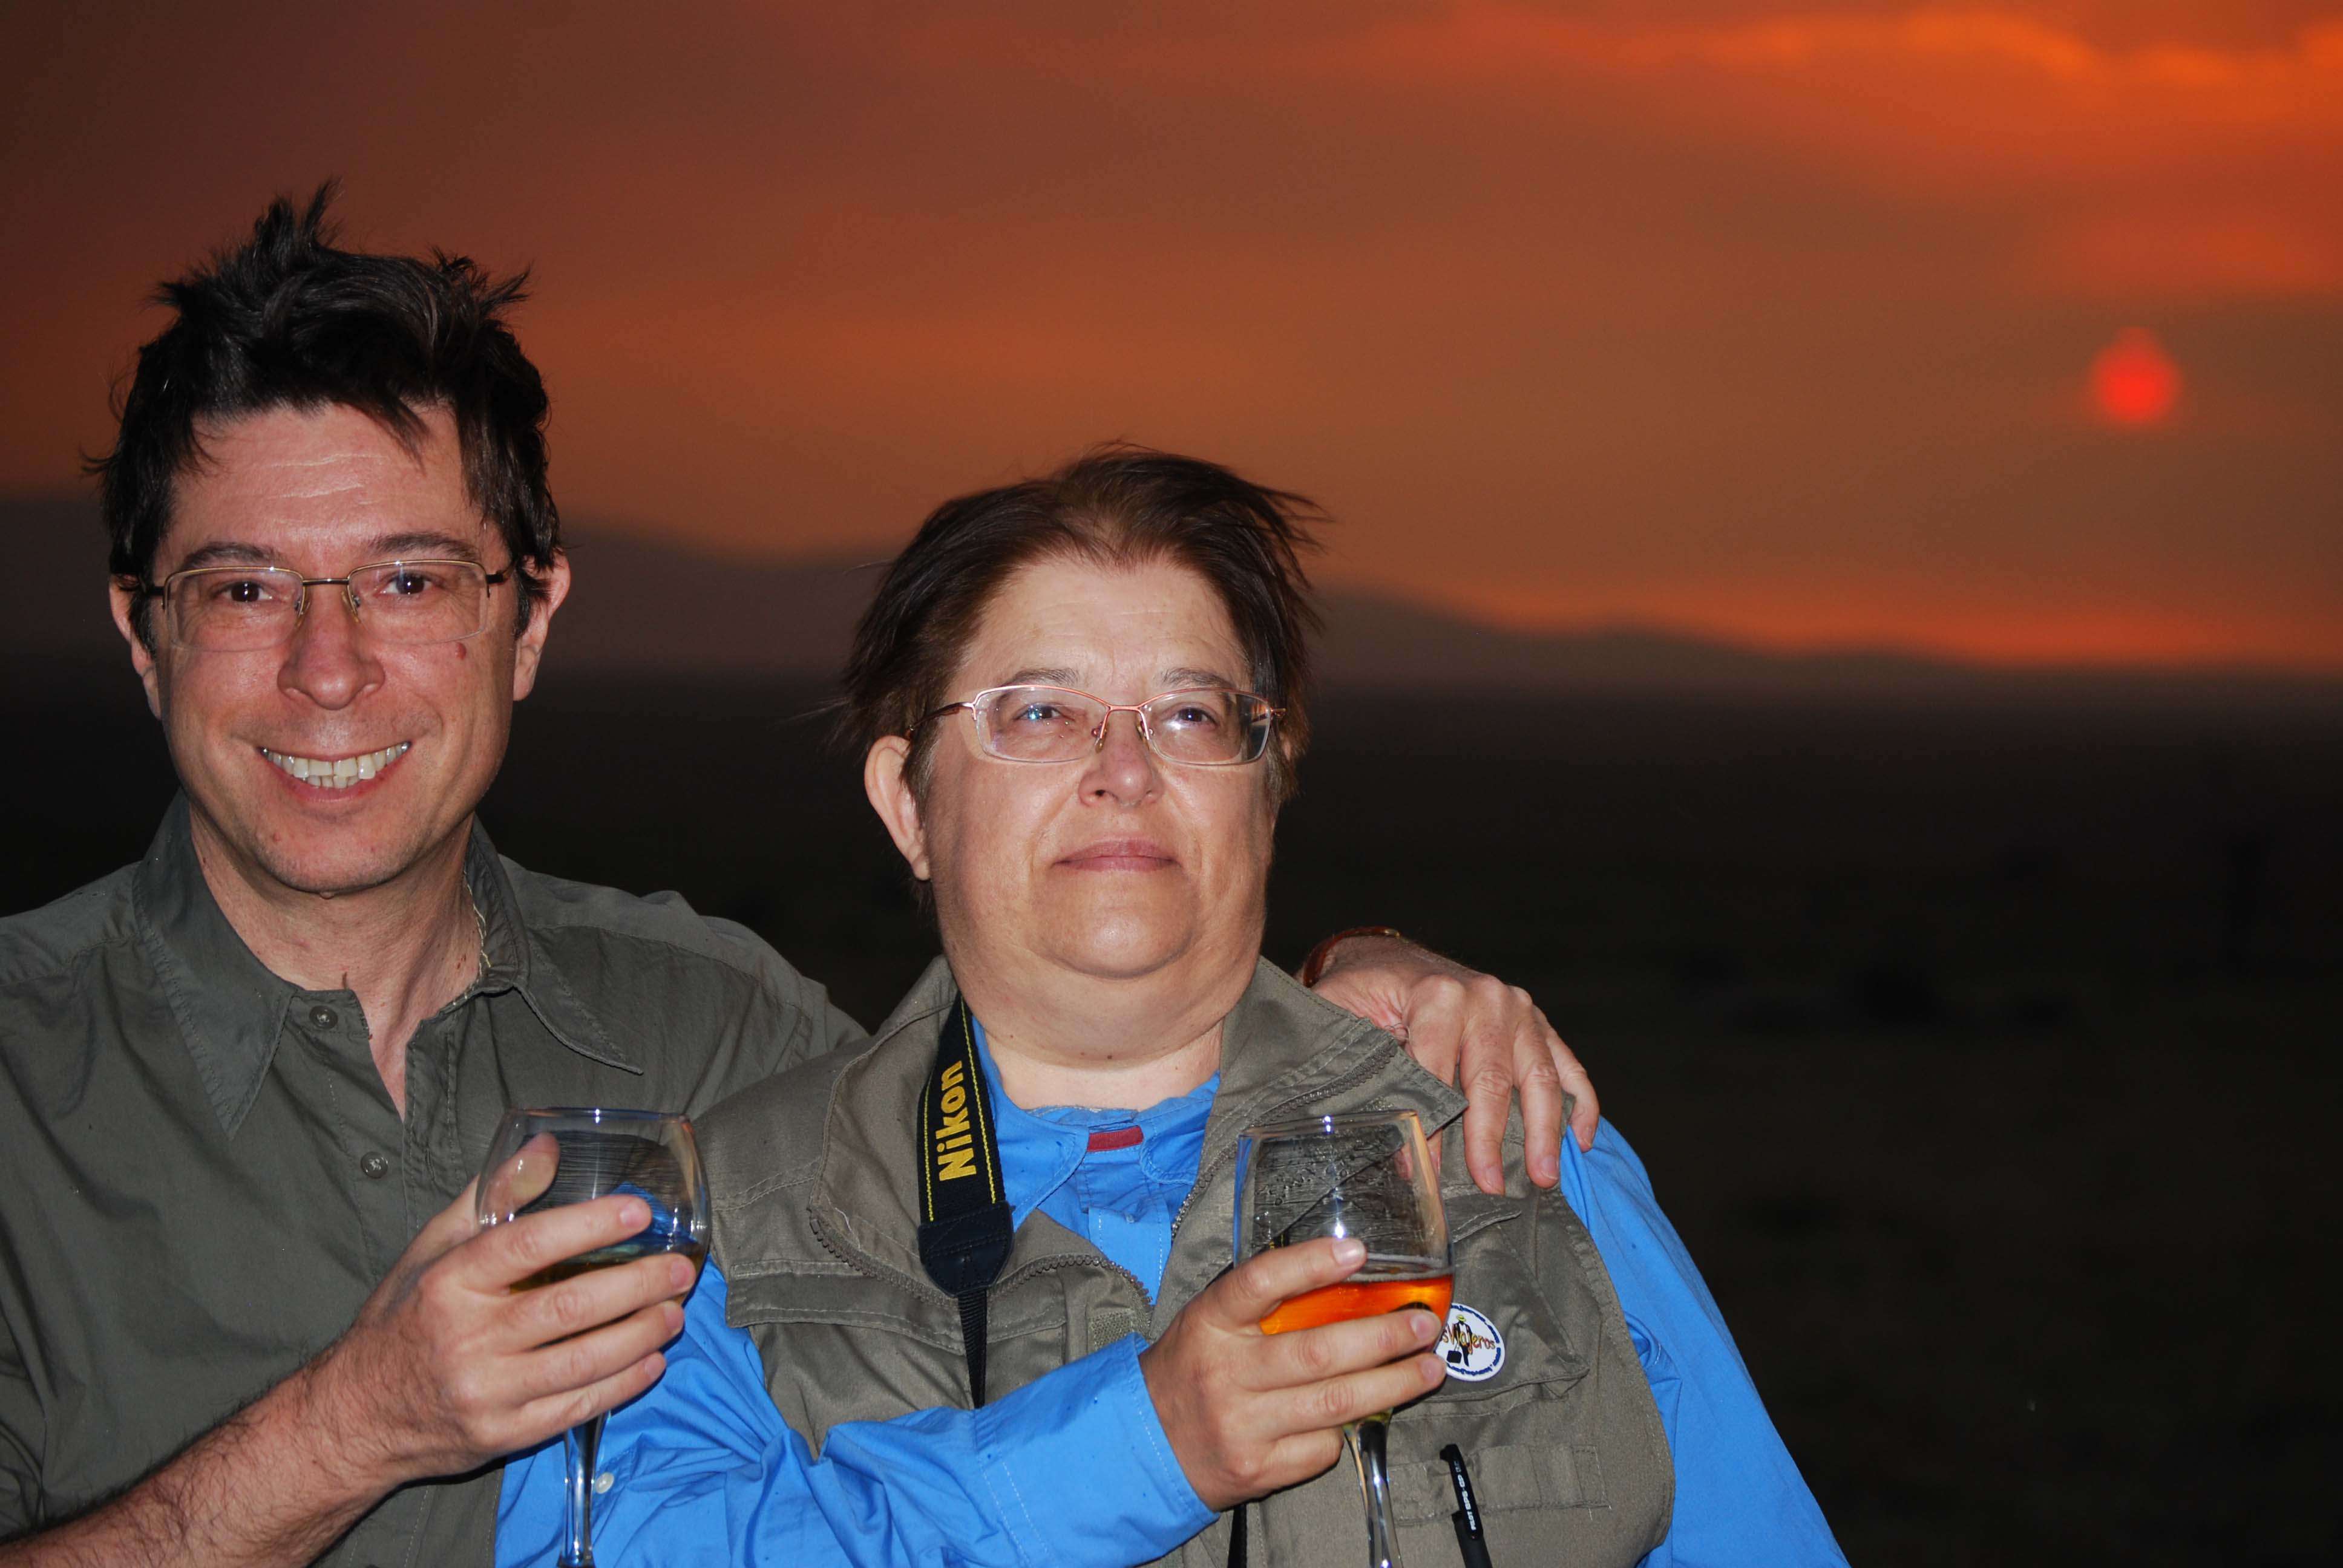 Enkewa y una maravillosa puesta de sol - Regreso al Mara - Kenia (14)